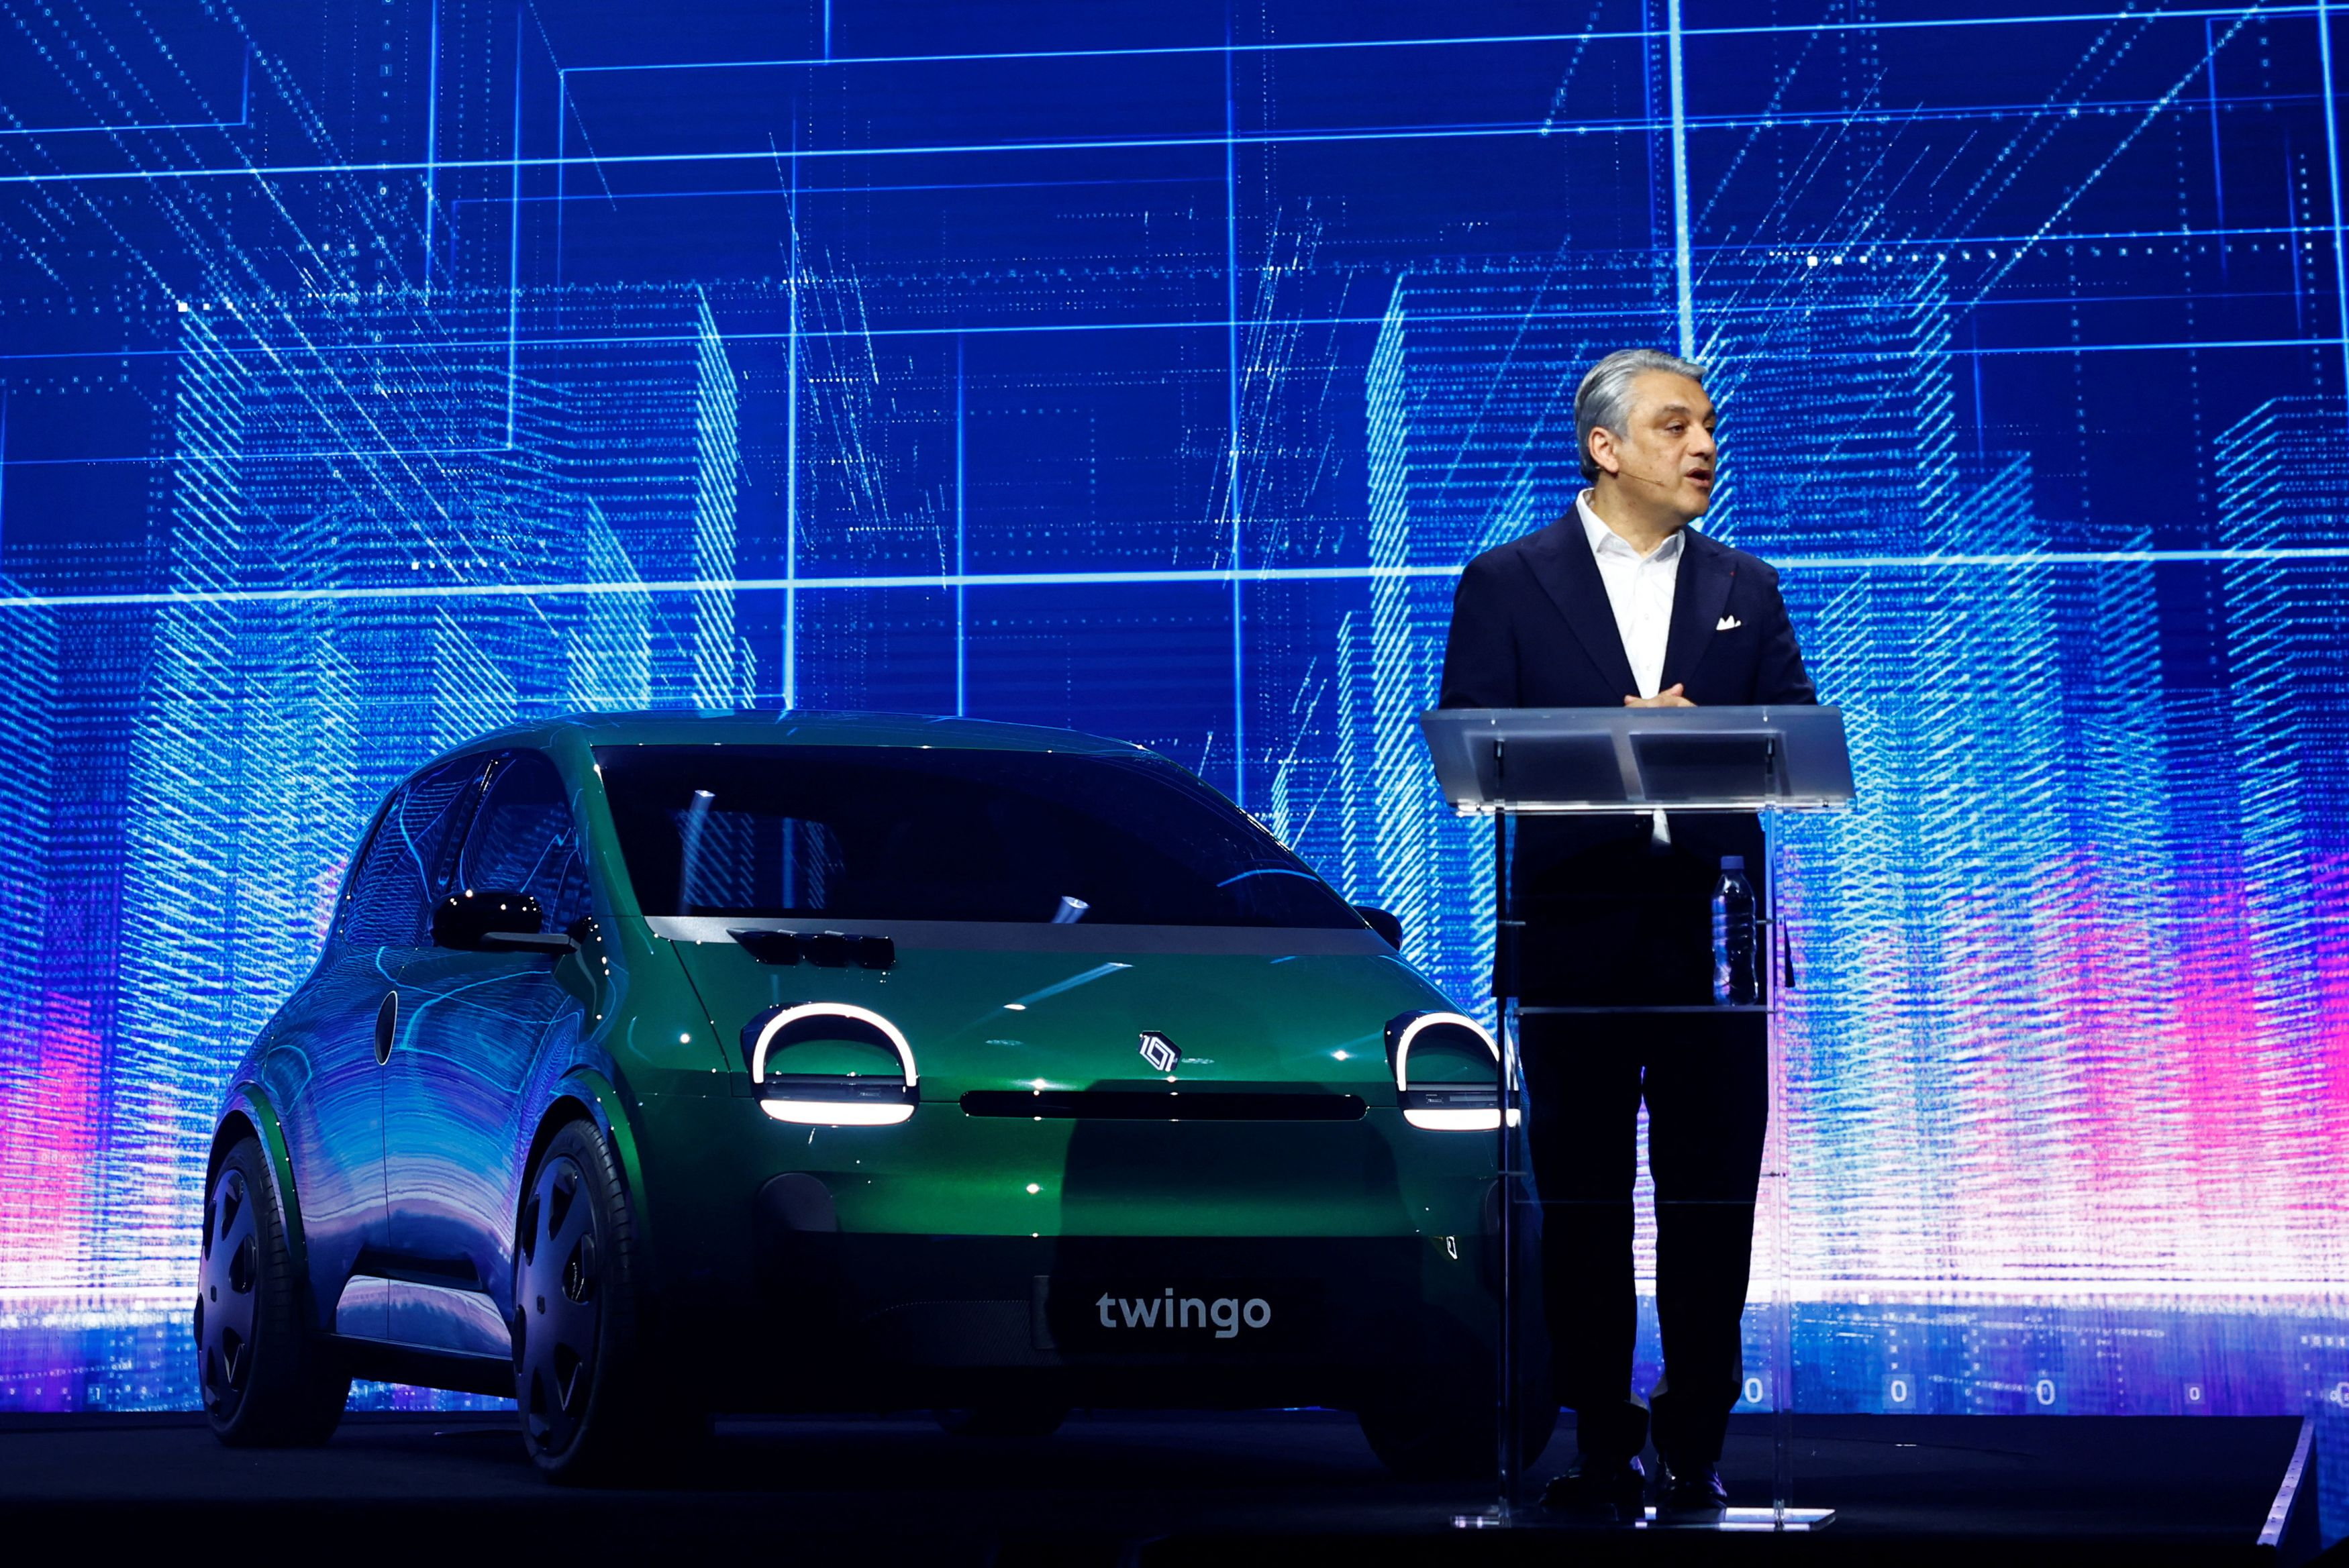 Avec sa nouvelle ë-C3, Citroën va-t-elle démocratiser la voiture électrique?